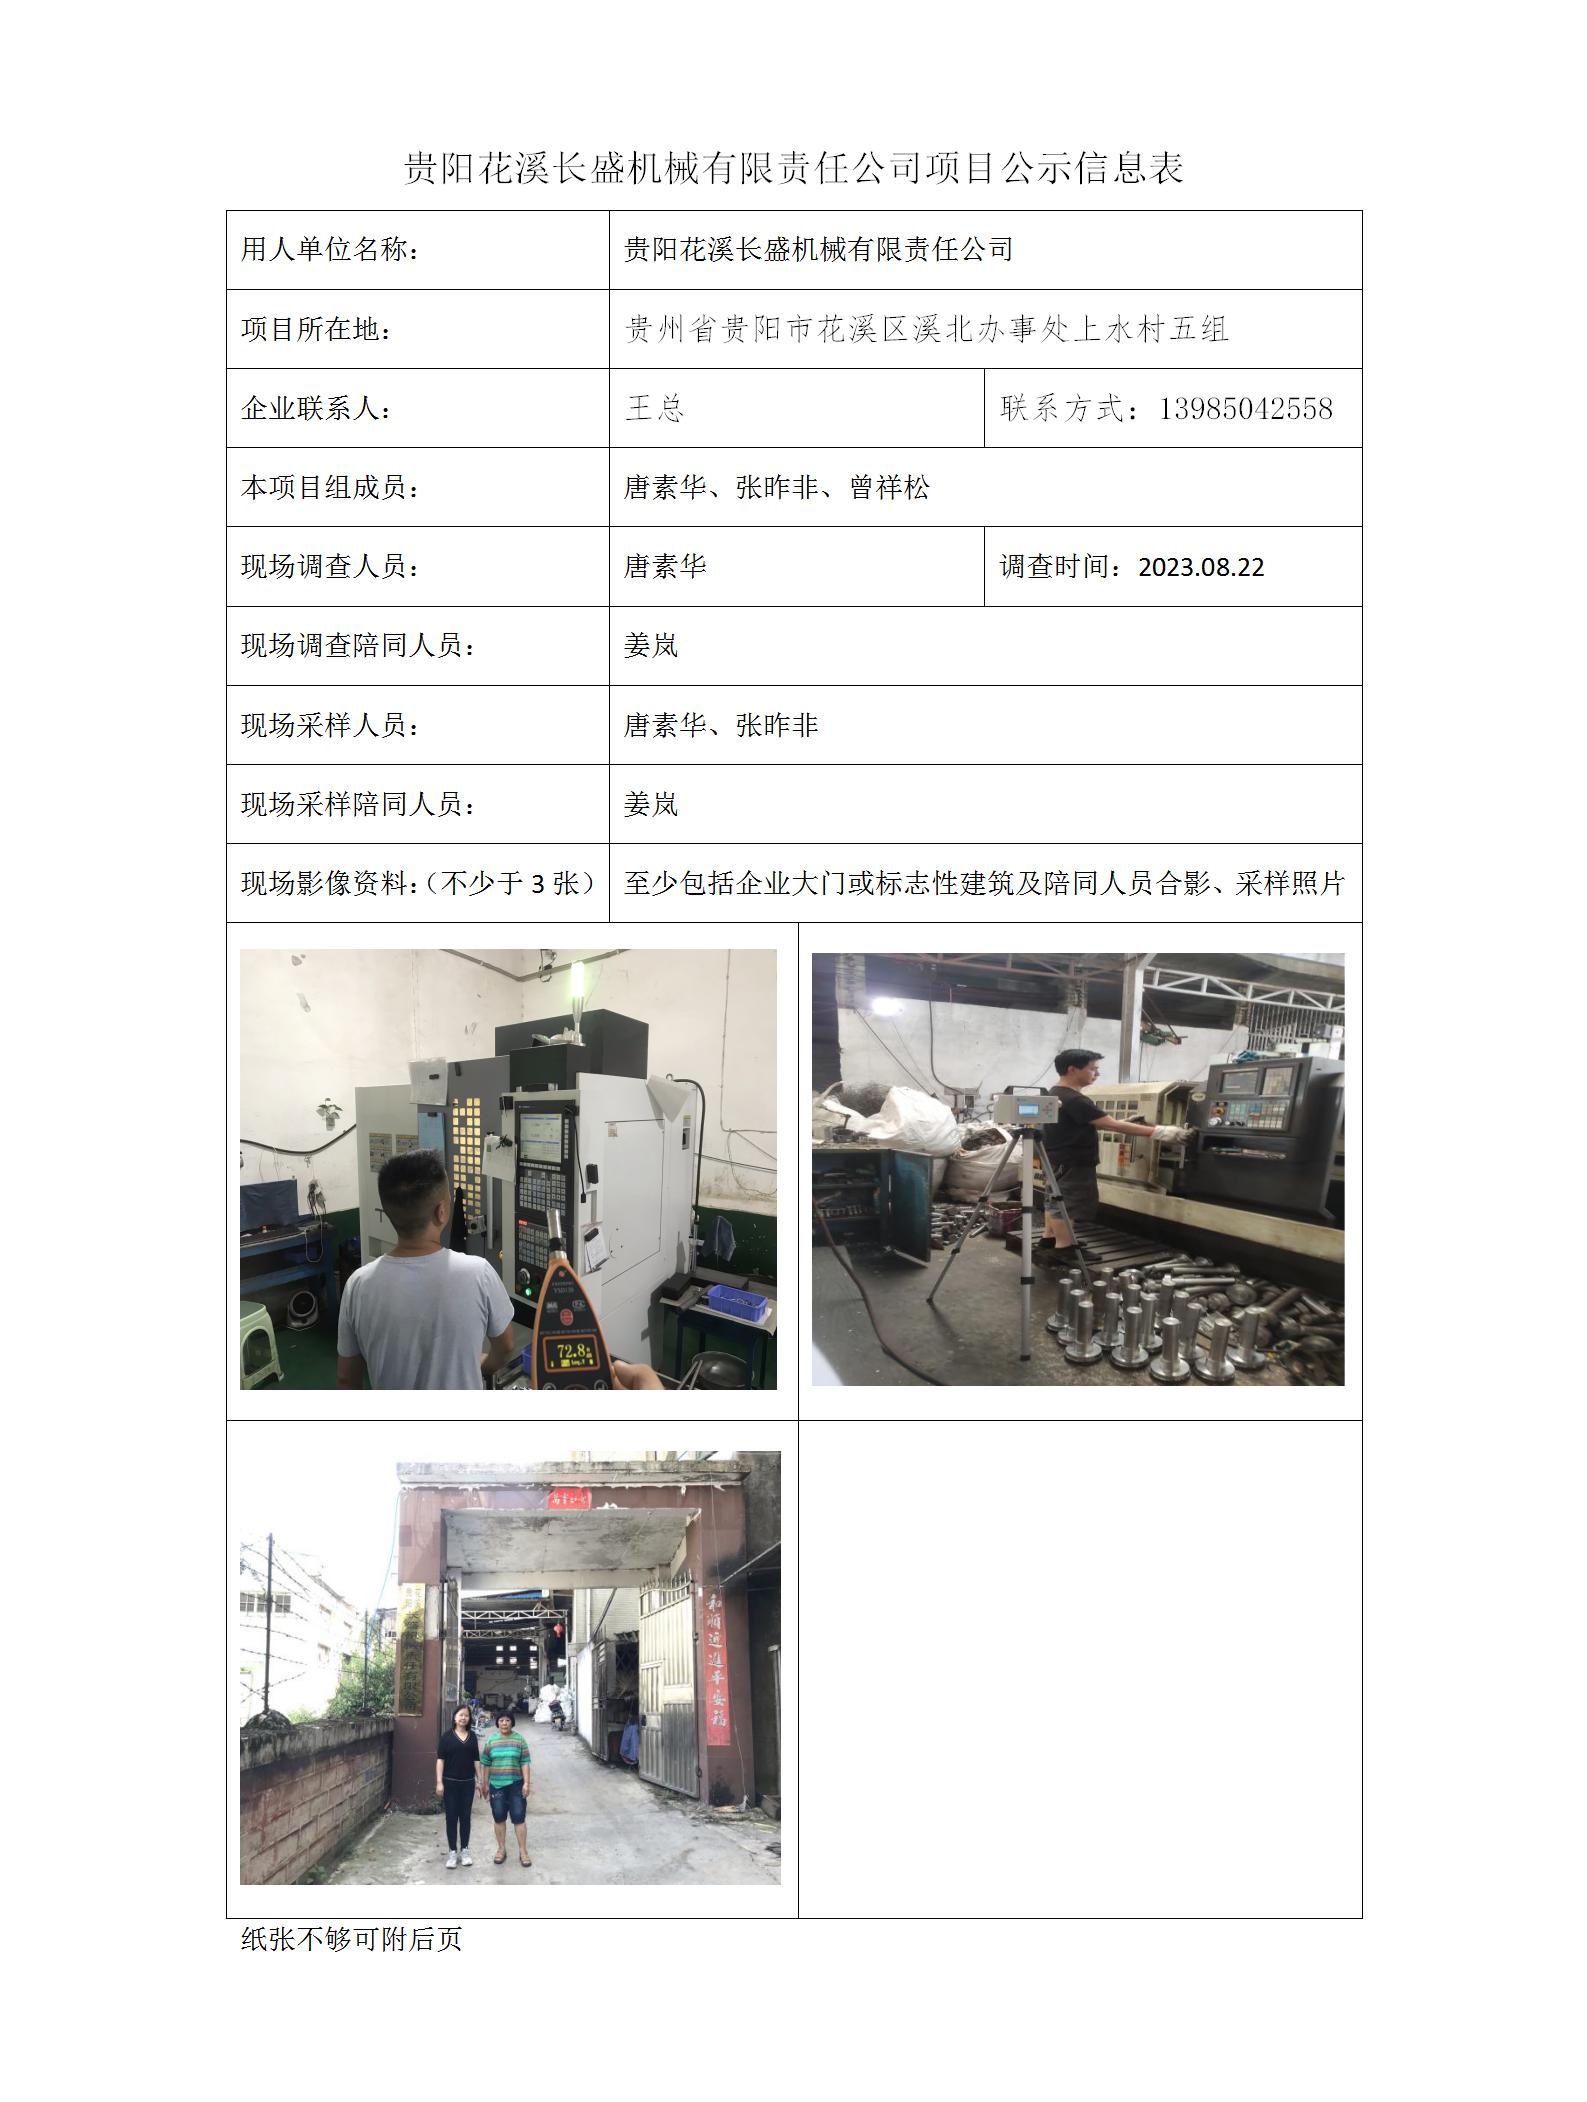 贵阳花溪长盛机械有限公司项目公示信息表_01.jpg